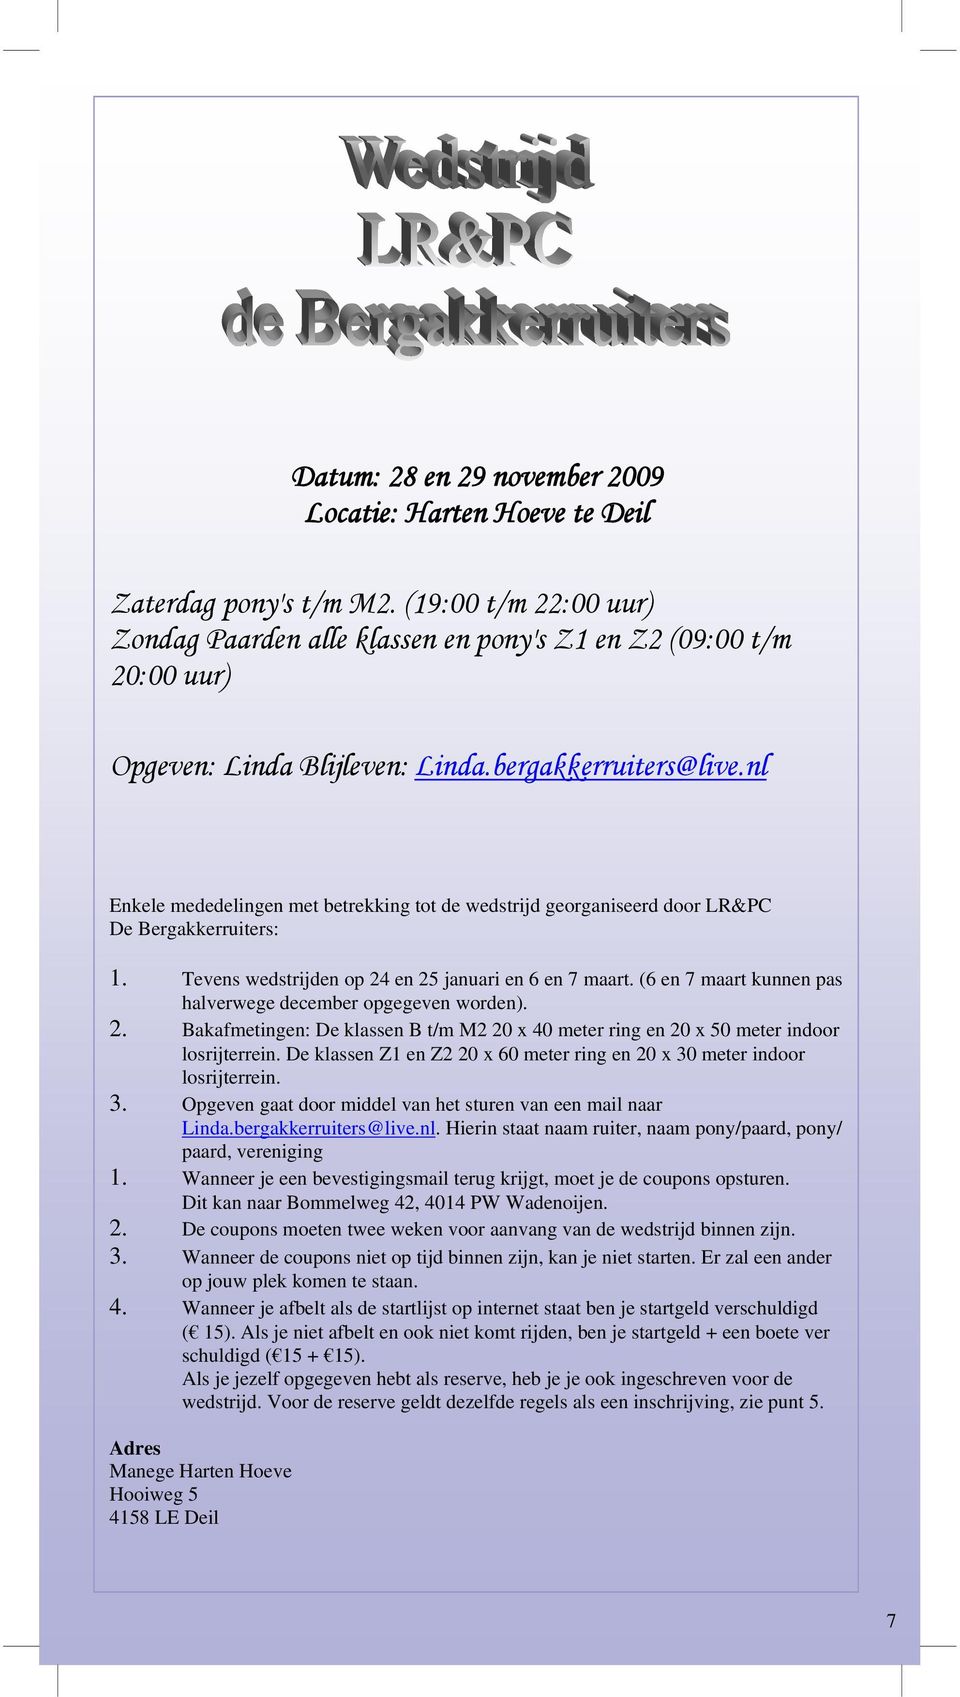 nl Enkele mededelingen met betrekking tot de wedstrijd georganiseerd door LR&PC De Bergakkerruiters: 1. Tevens wedstrijden op 24 en 25 januari en 6 en 7 maart.